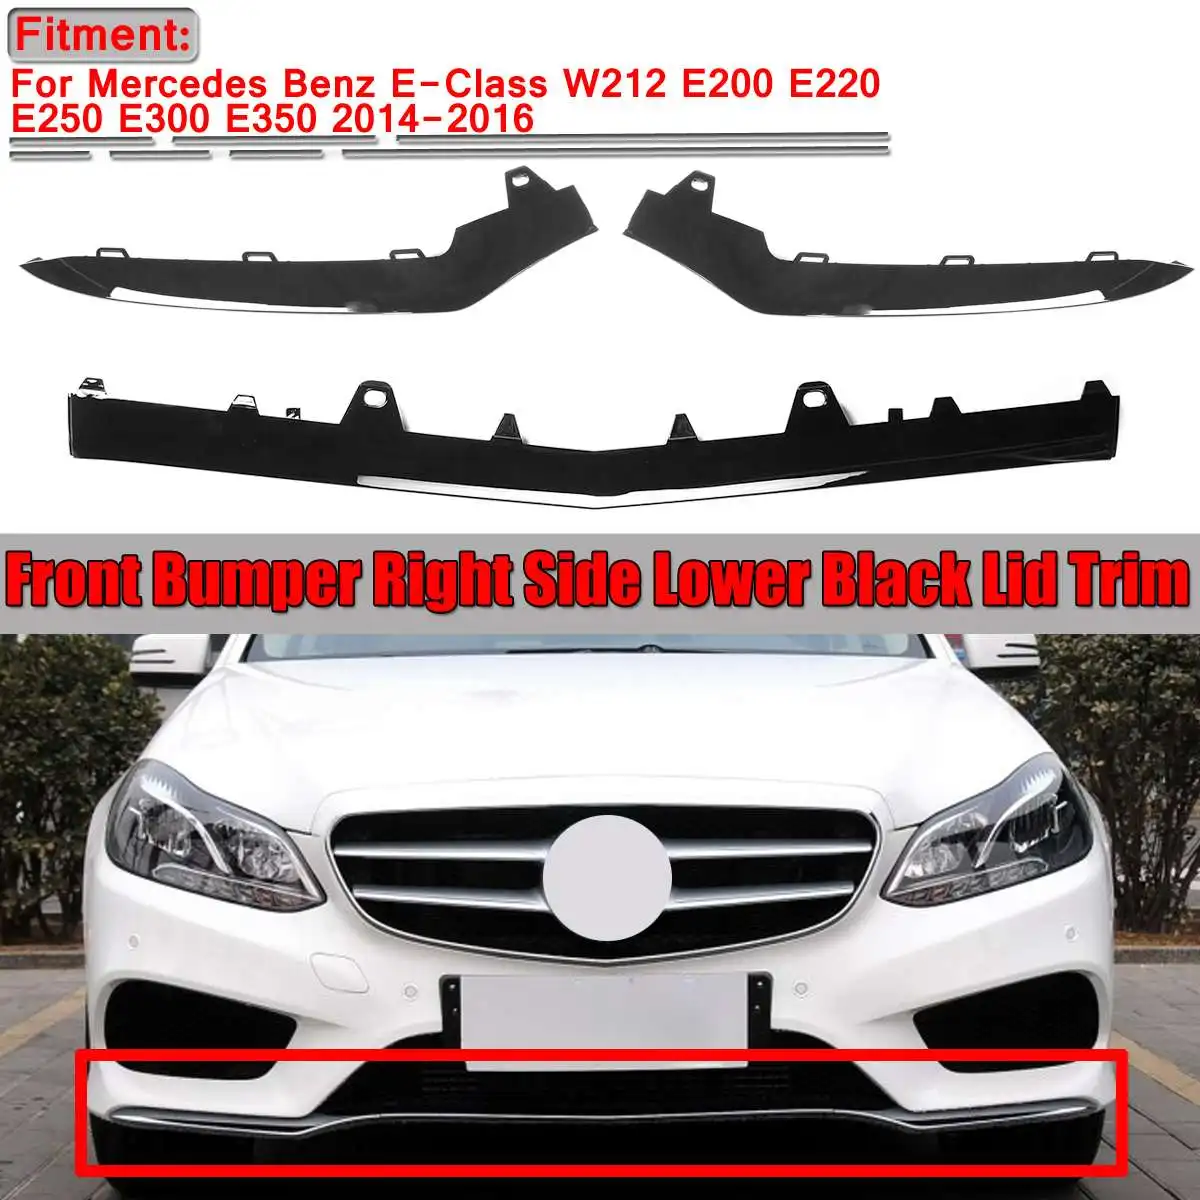 

Black Car Front Bumper Splitter Diffuser Lip Lower Lid Cover Trim For Benz E-Class W212 E200 E220 E250 E300 E350 2014 2015 2016